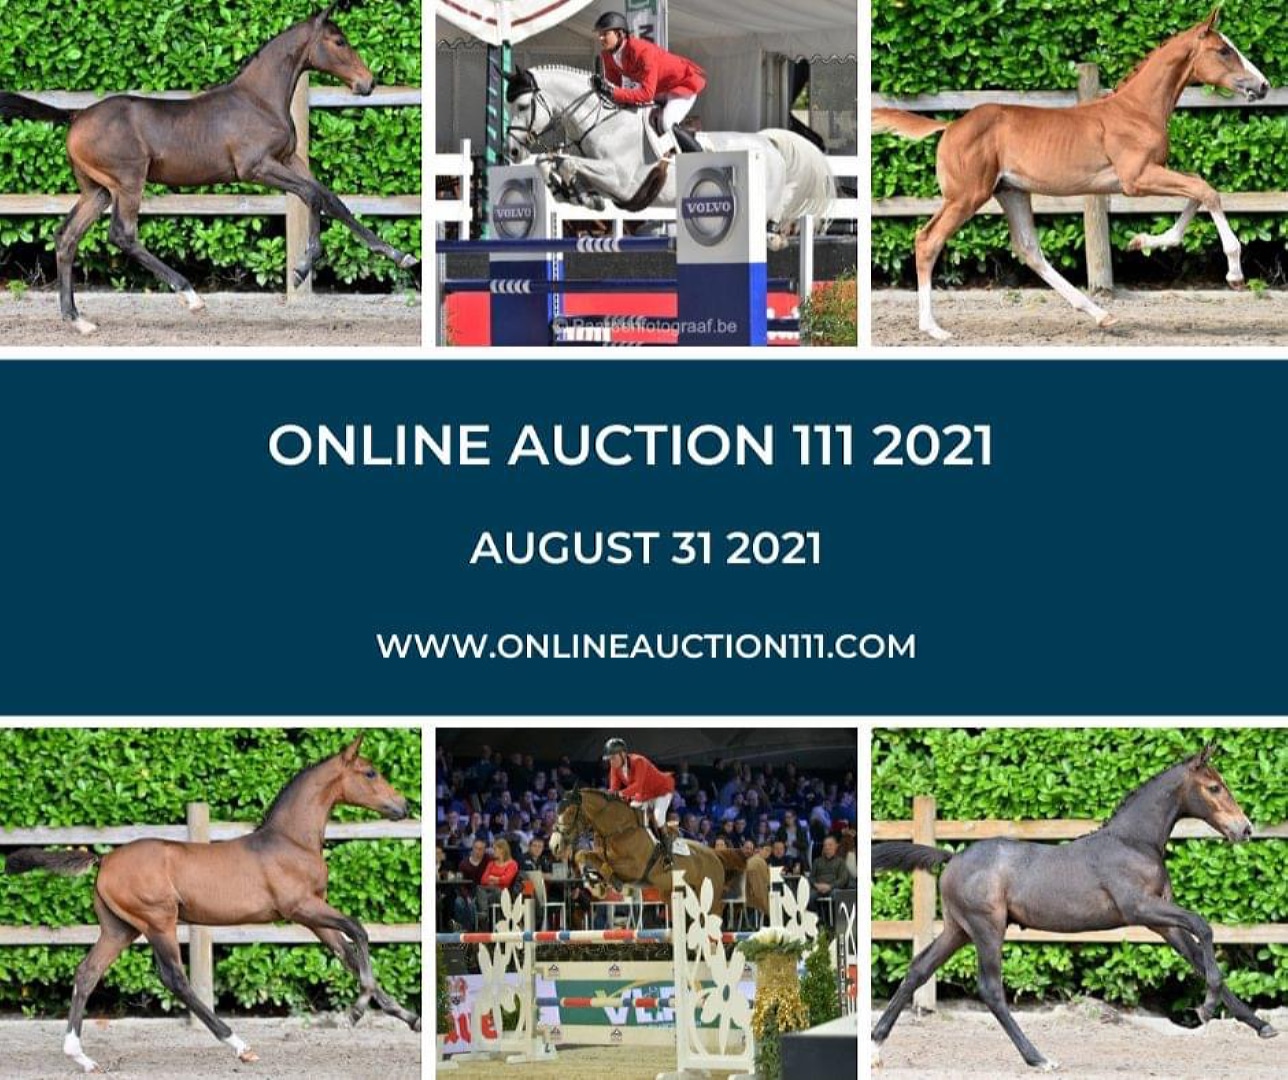 Онлайн-аукцион Foal Auction 111 – гены чемпионов бельгийской теплокровной породы!